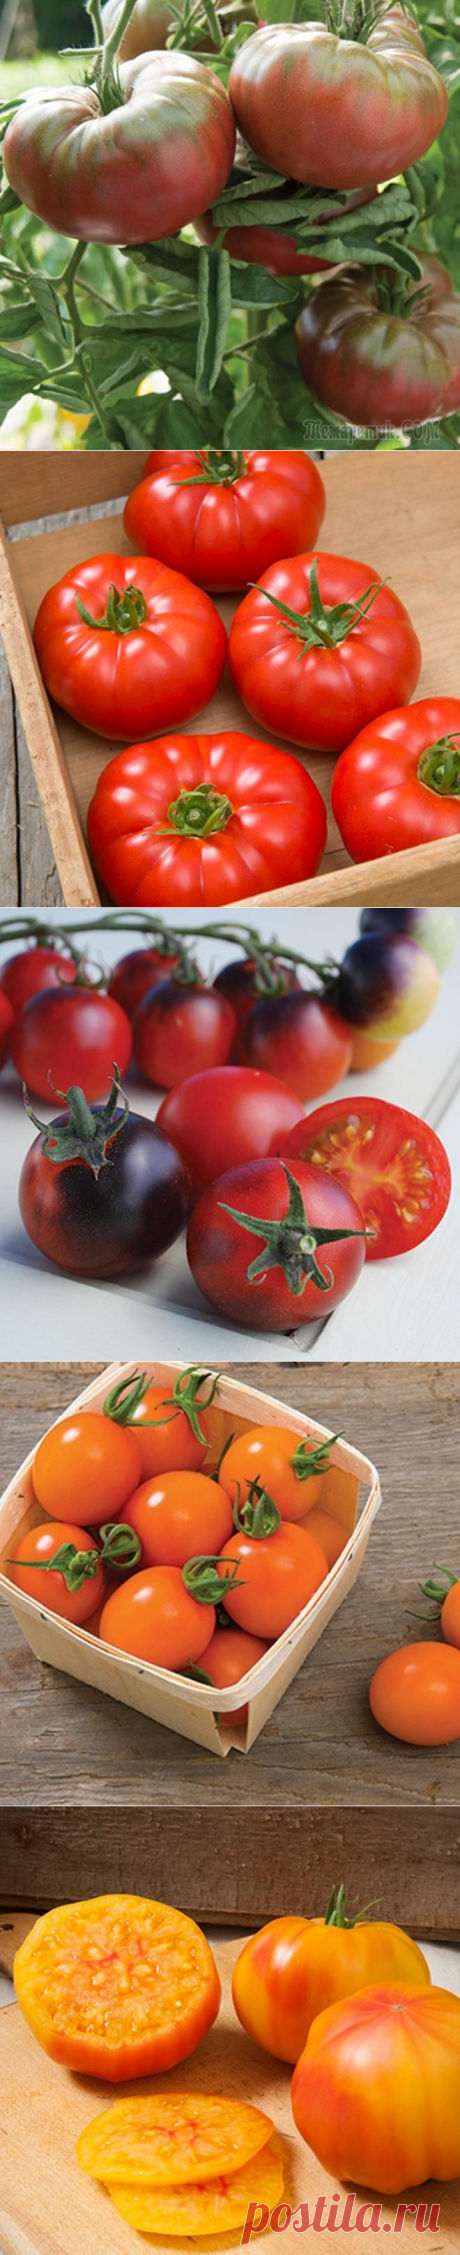 8 новых экзотических сортов томатов для будущего сезона